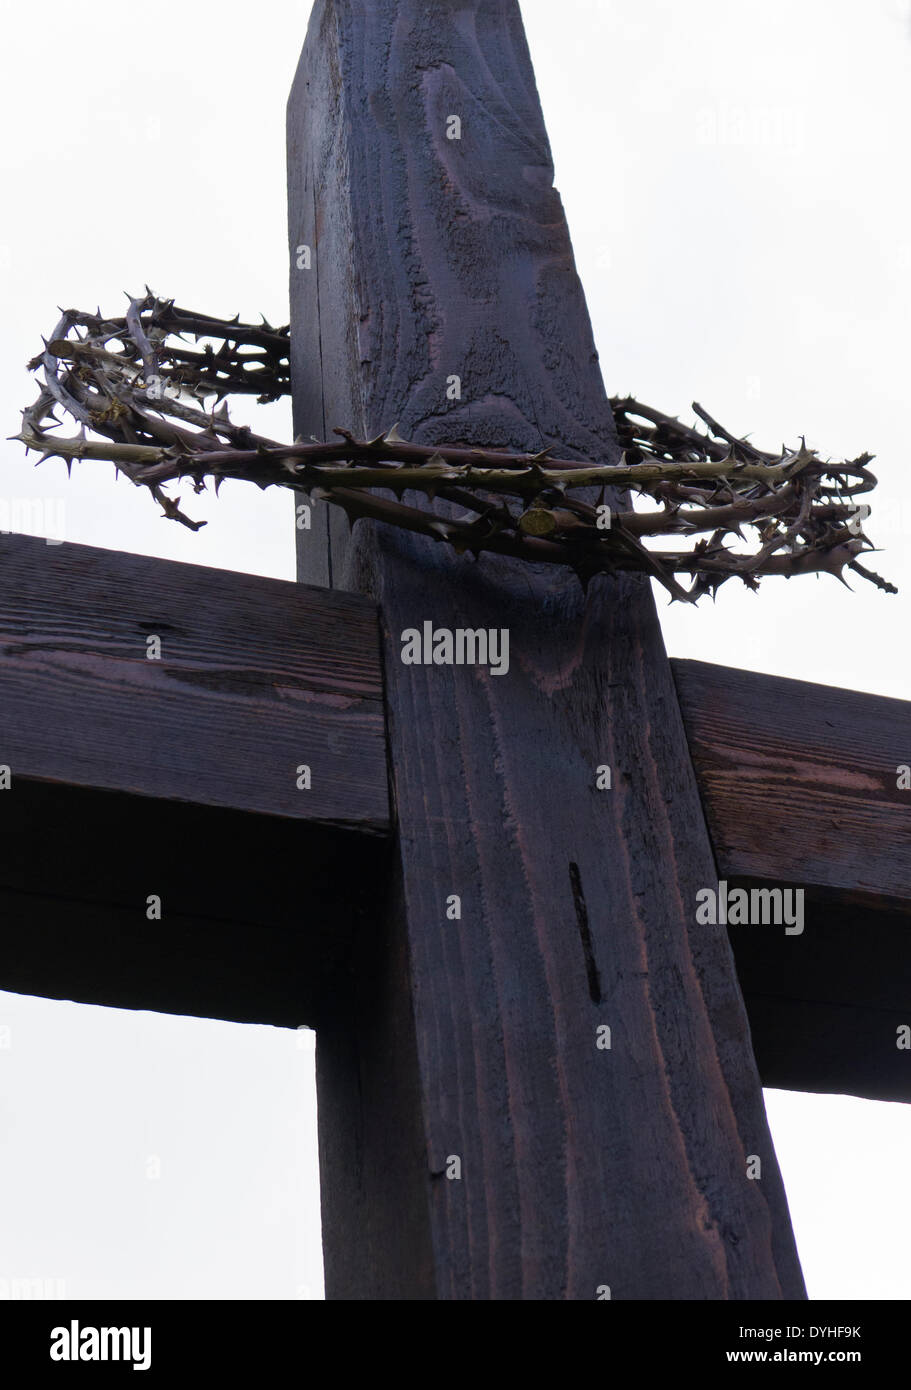 Peu de Walsingham, Norfolk, Royaume-Uni. 18 avril 2014. Une couronne d'épines sur une croix en bois pour marquer le Vendredi Saint à l'église de la Vierge Marie, peu de Walsingham, Norfolk, Angleterre, Royaume-Uni. Crédit : Stuart Aylmer/Alamy Live News Banque D'Images